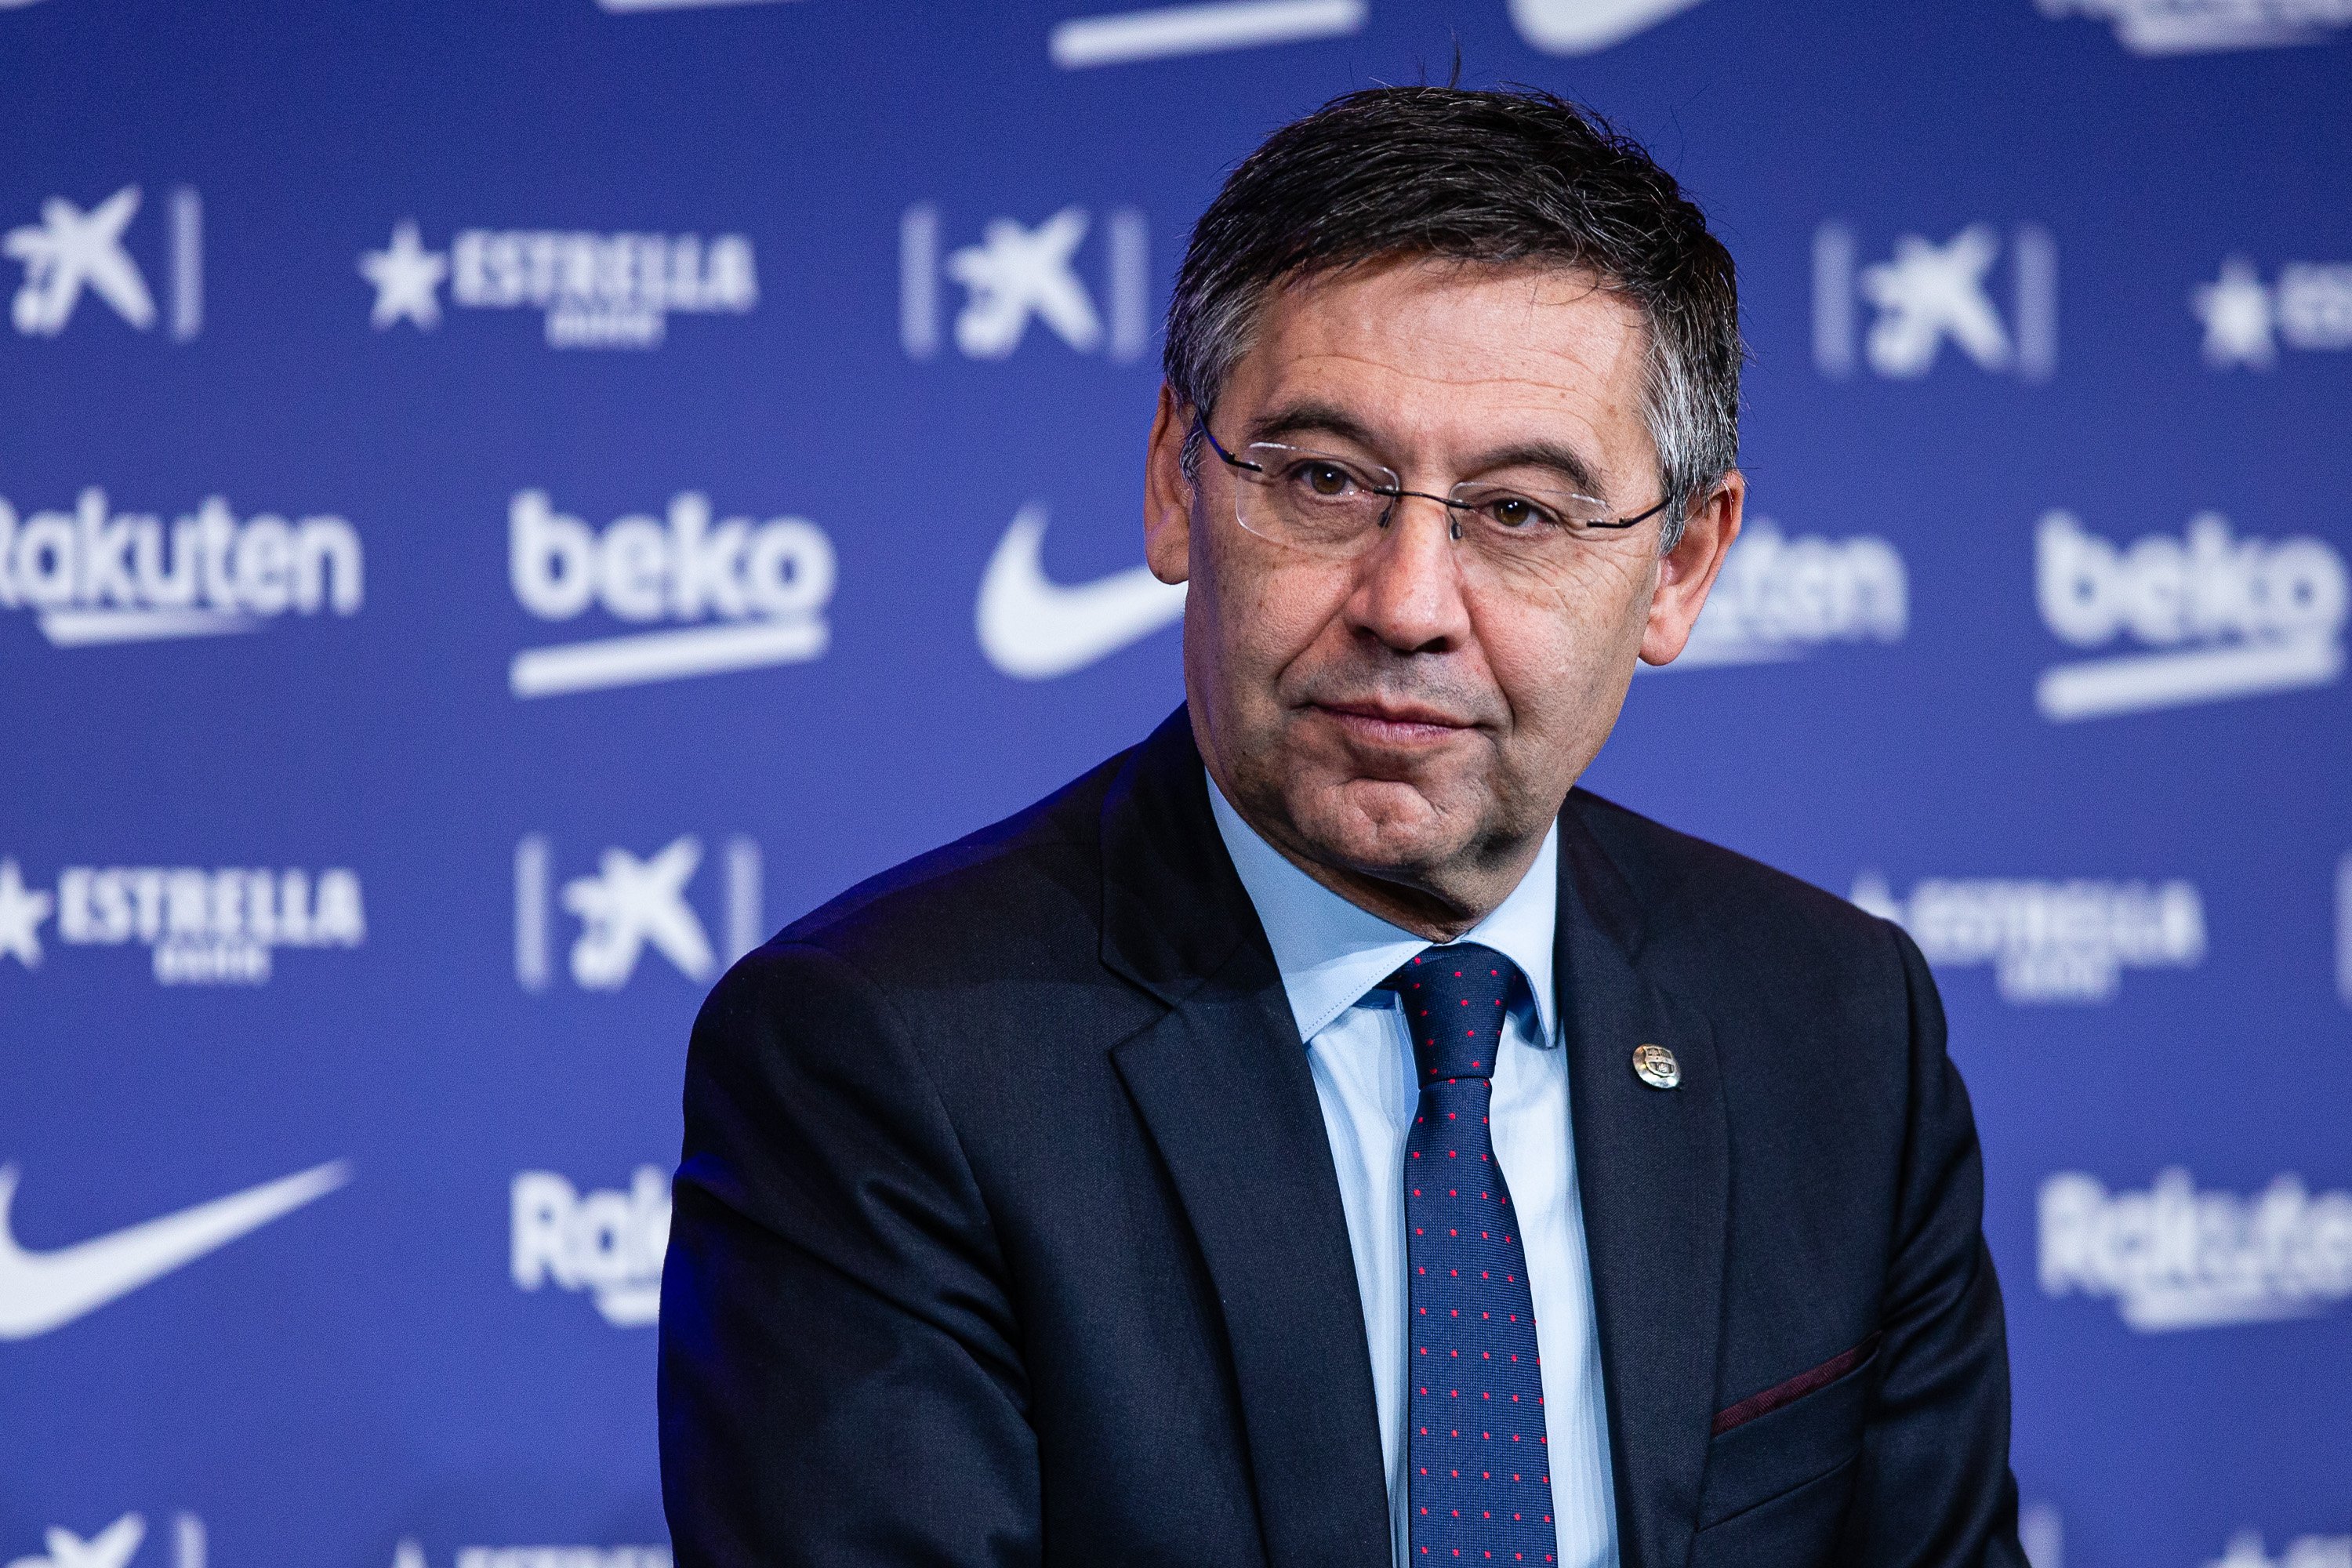 El Barça cierra el ejercicio económico 2019/20 con pérdidas de 97 millones de euros